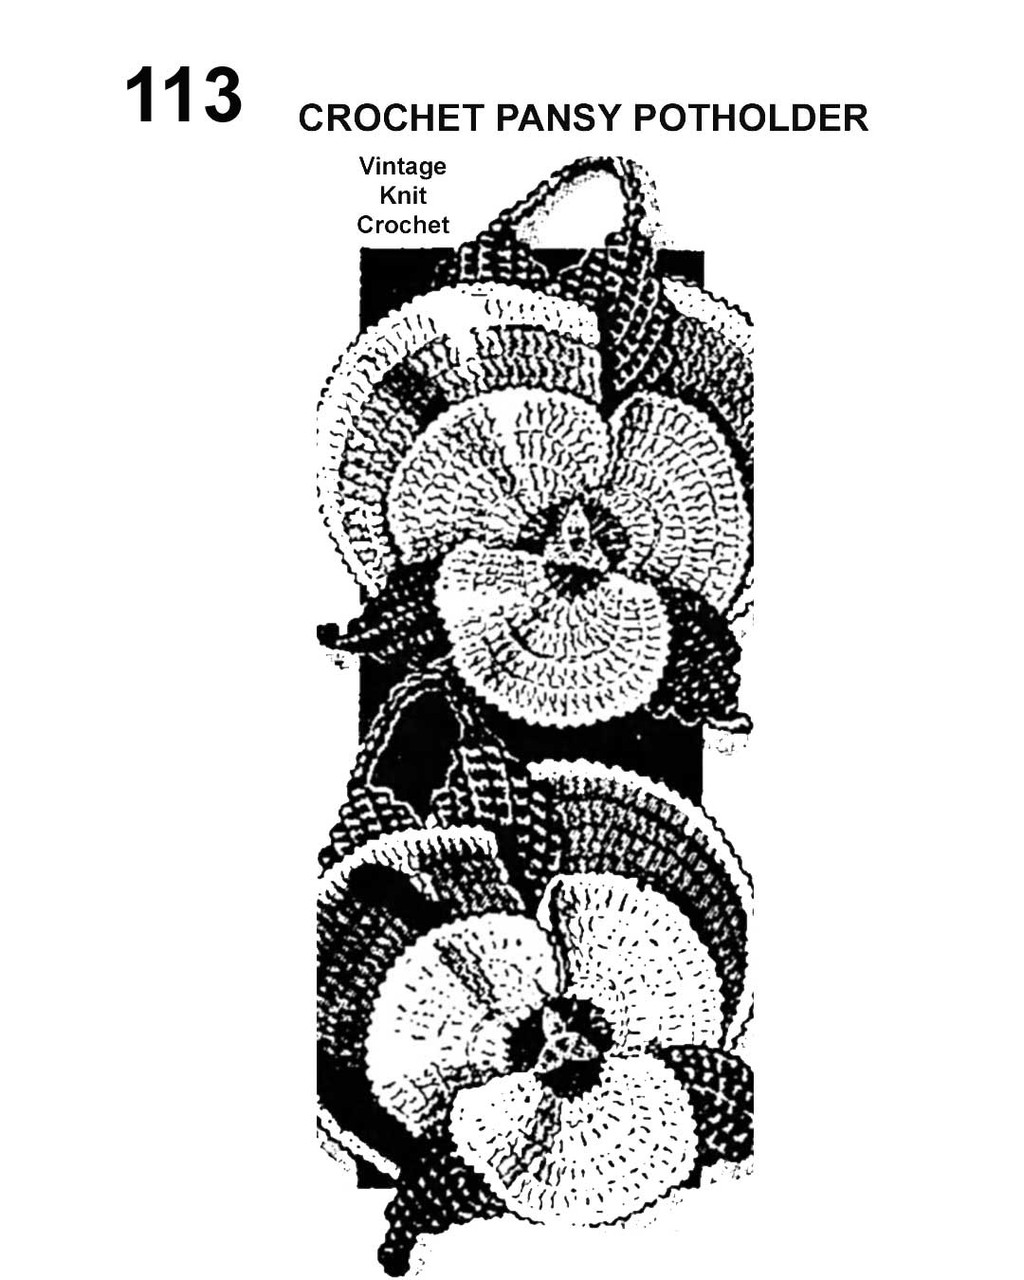 Crochet Giant Pansy Potholder Pattern, Mail Order Design 113